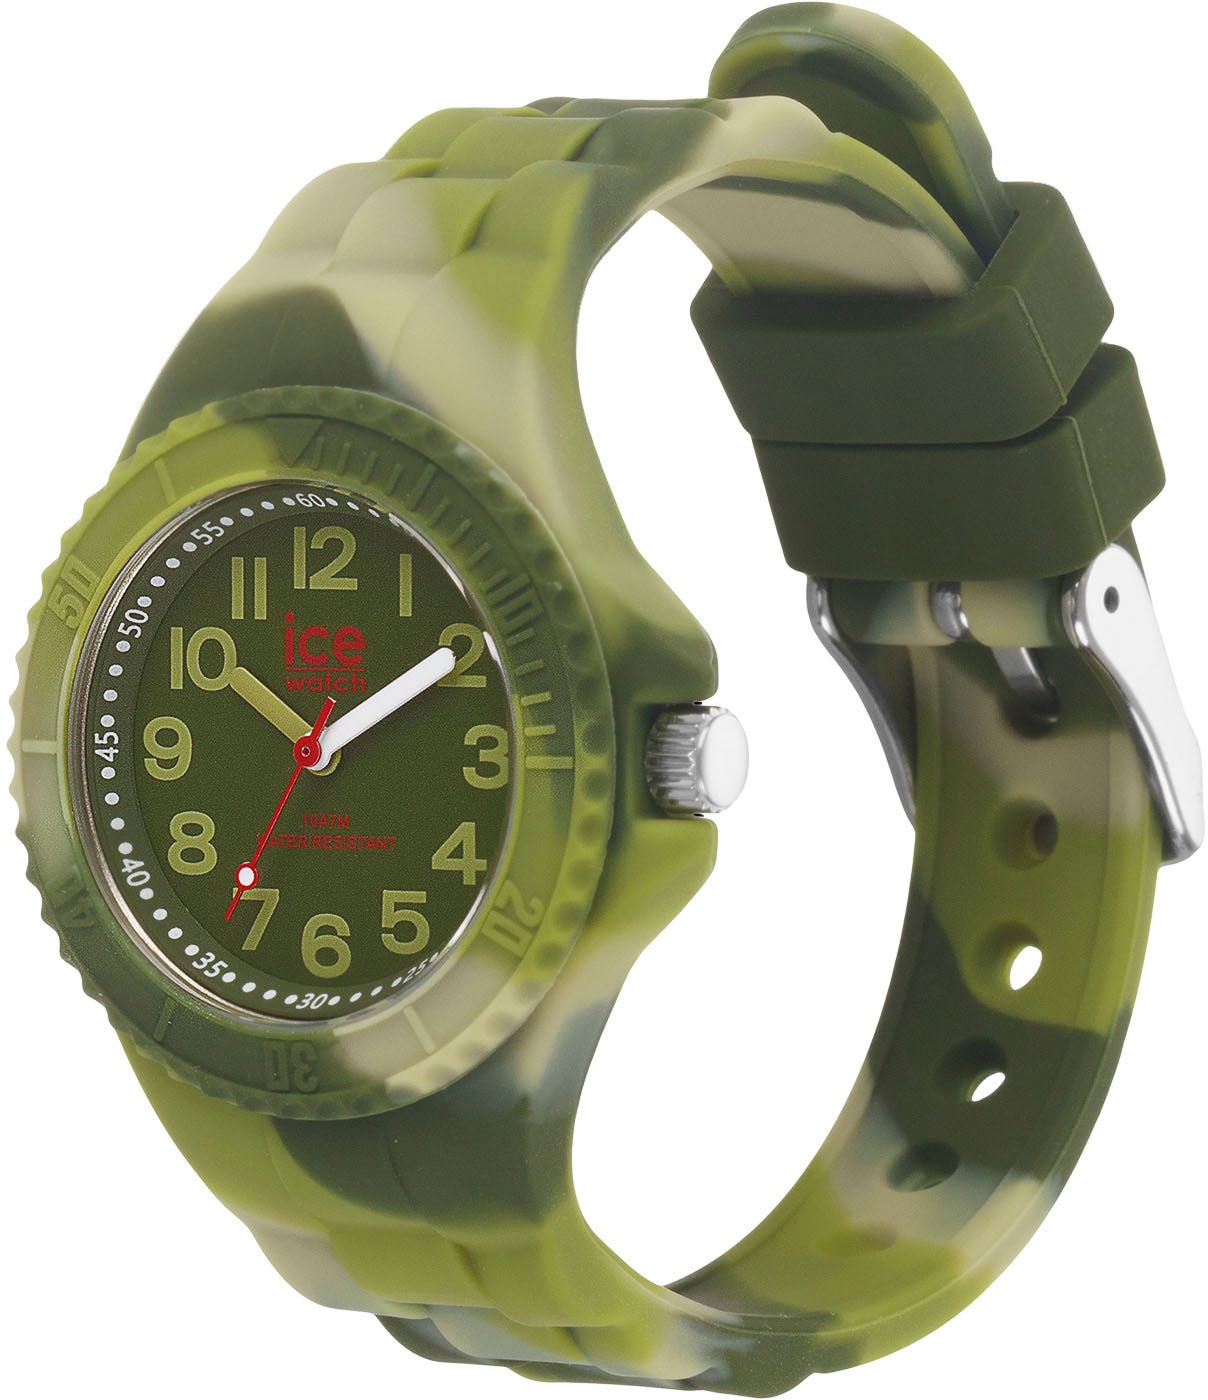 Green Shop dye - ice-watch - Online Extra-Small shades 3H, »ICE im tie OTTO - and 021235«, als Quarzuhr ideal Geschenk auch